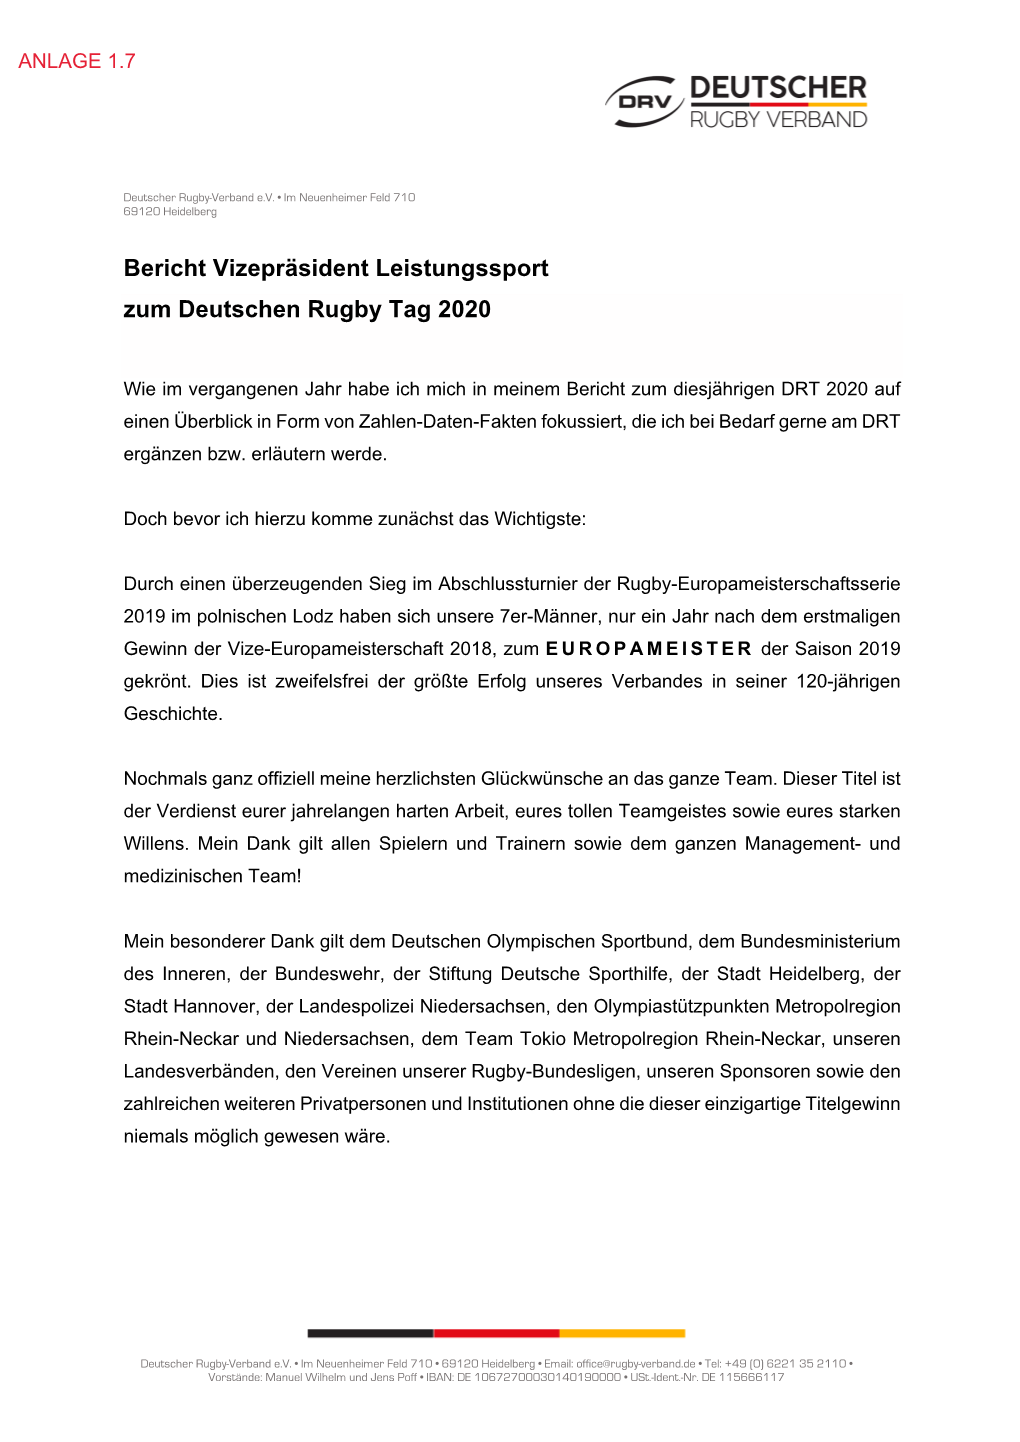 Bericht Vizepräsident Leistungssport Zum Deutschen Rugby Tag 2020